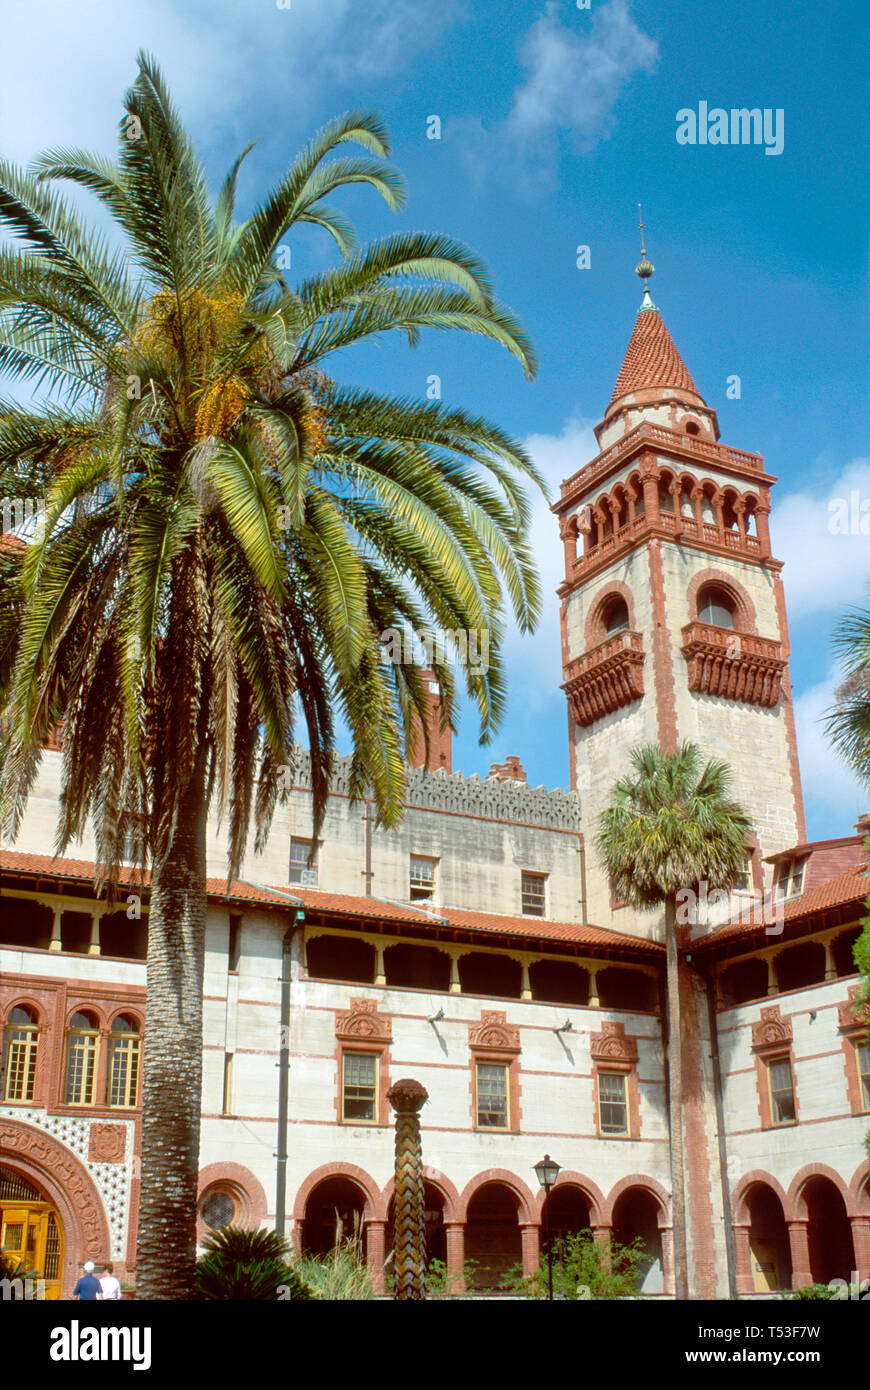 Floride, St. Augustine Flagler College ancien Ponce de Leon, hôtel, construit 1887 cour US plus ancienne ville, FL345 Banque D'Images